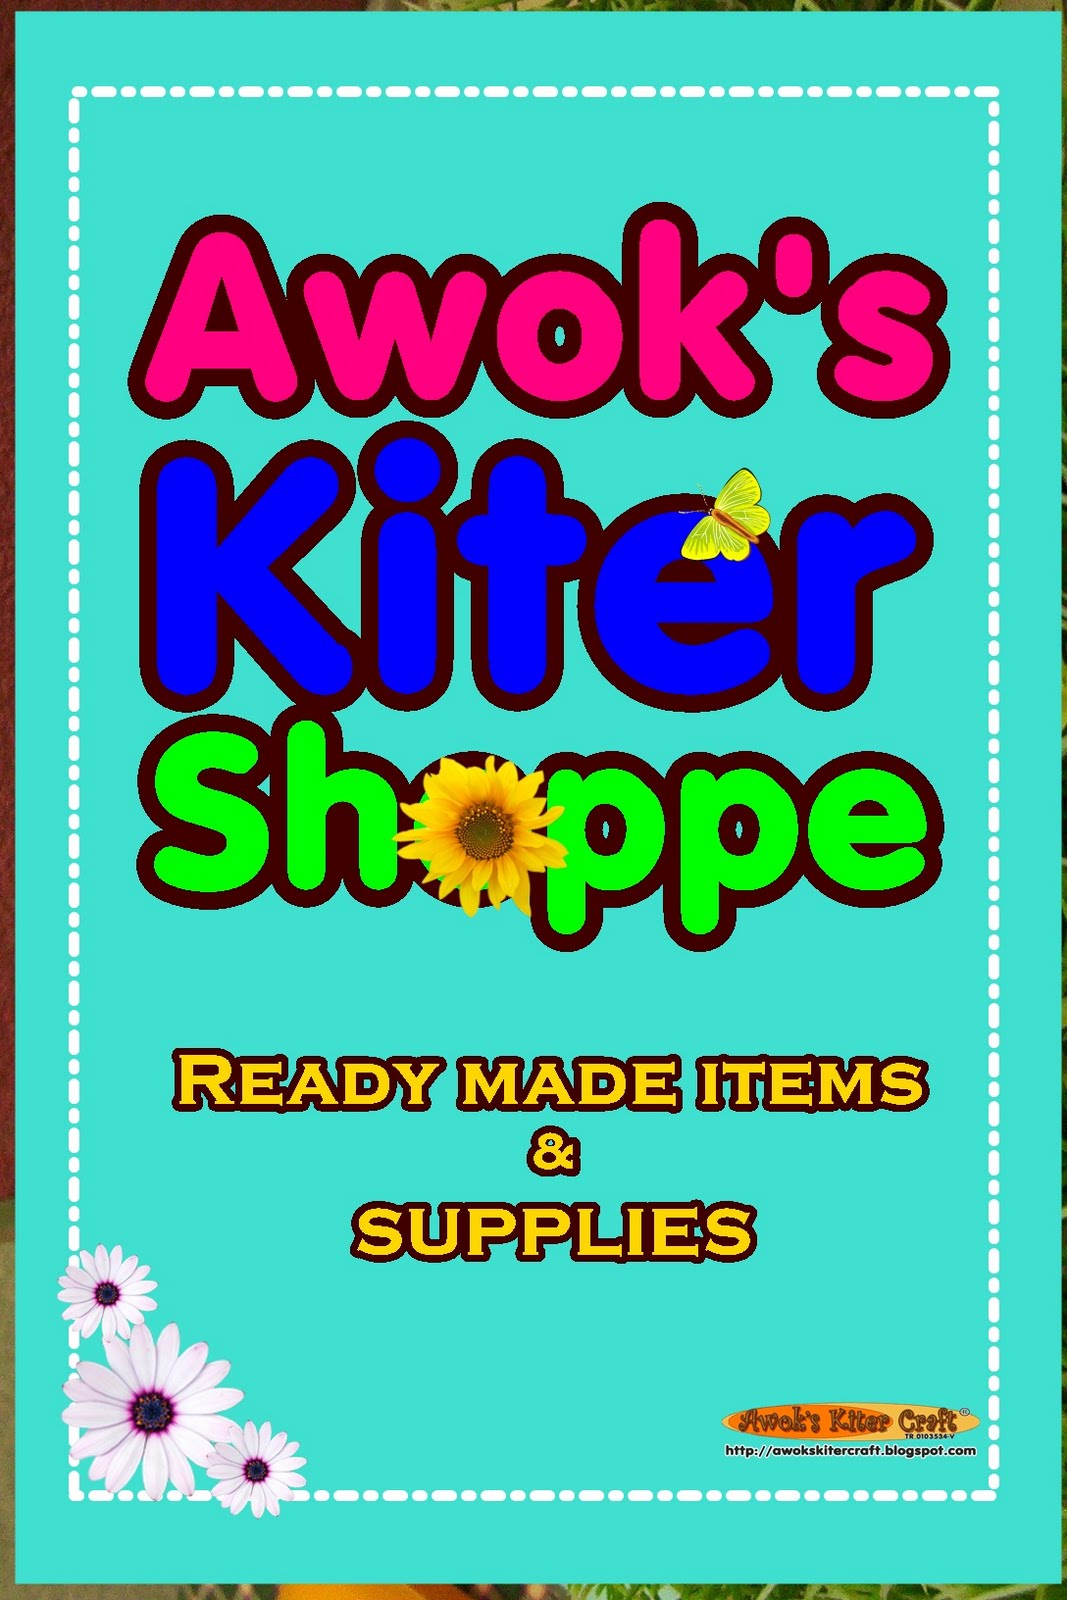 Awok's Kiter Shoppe